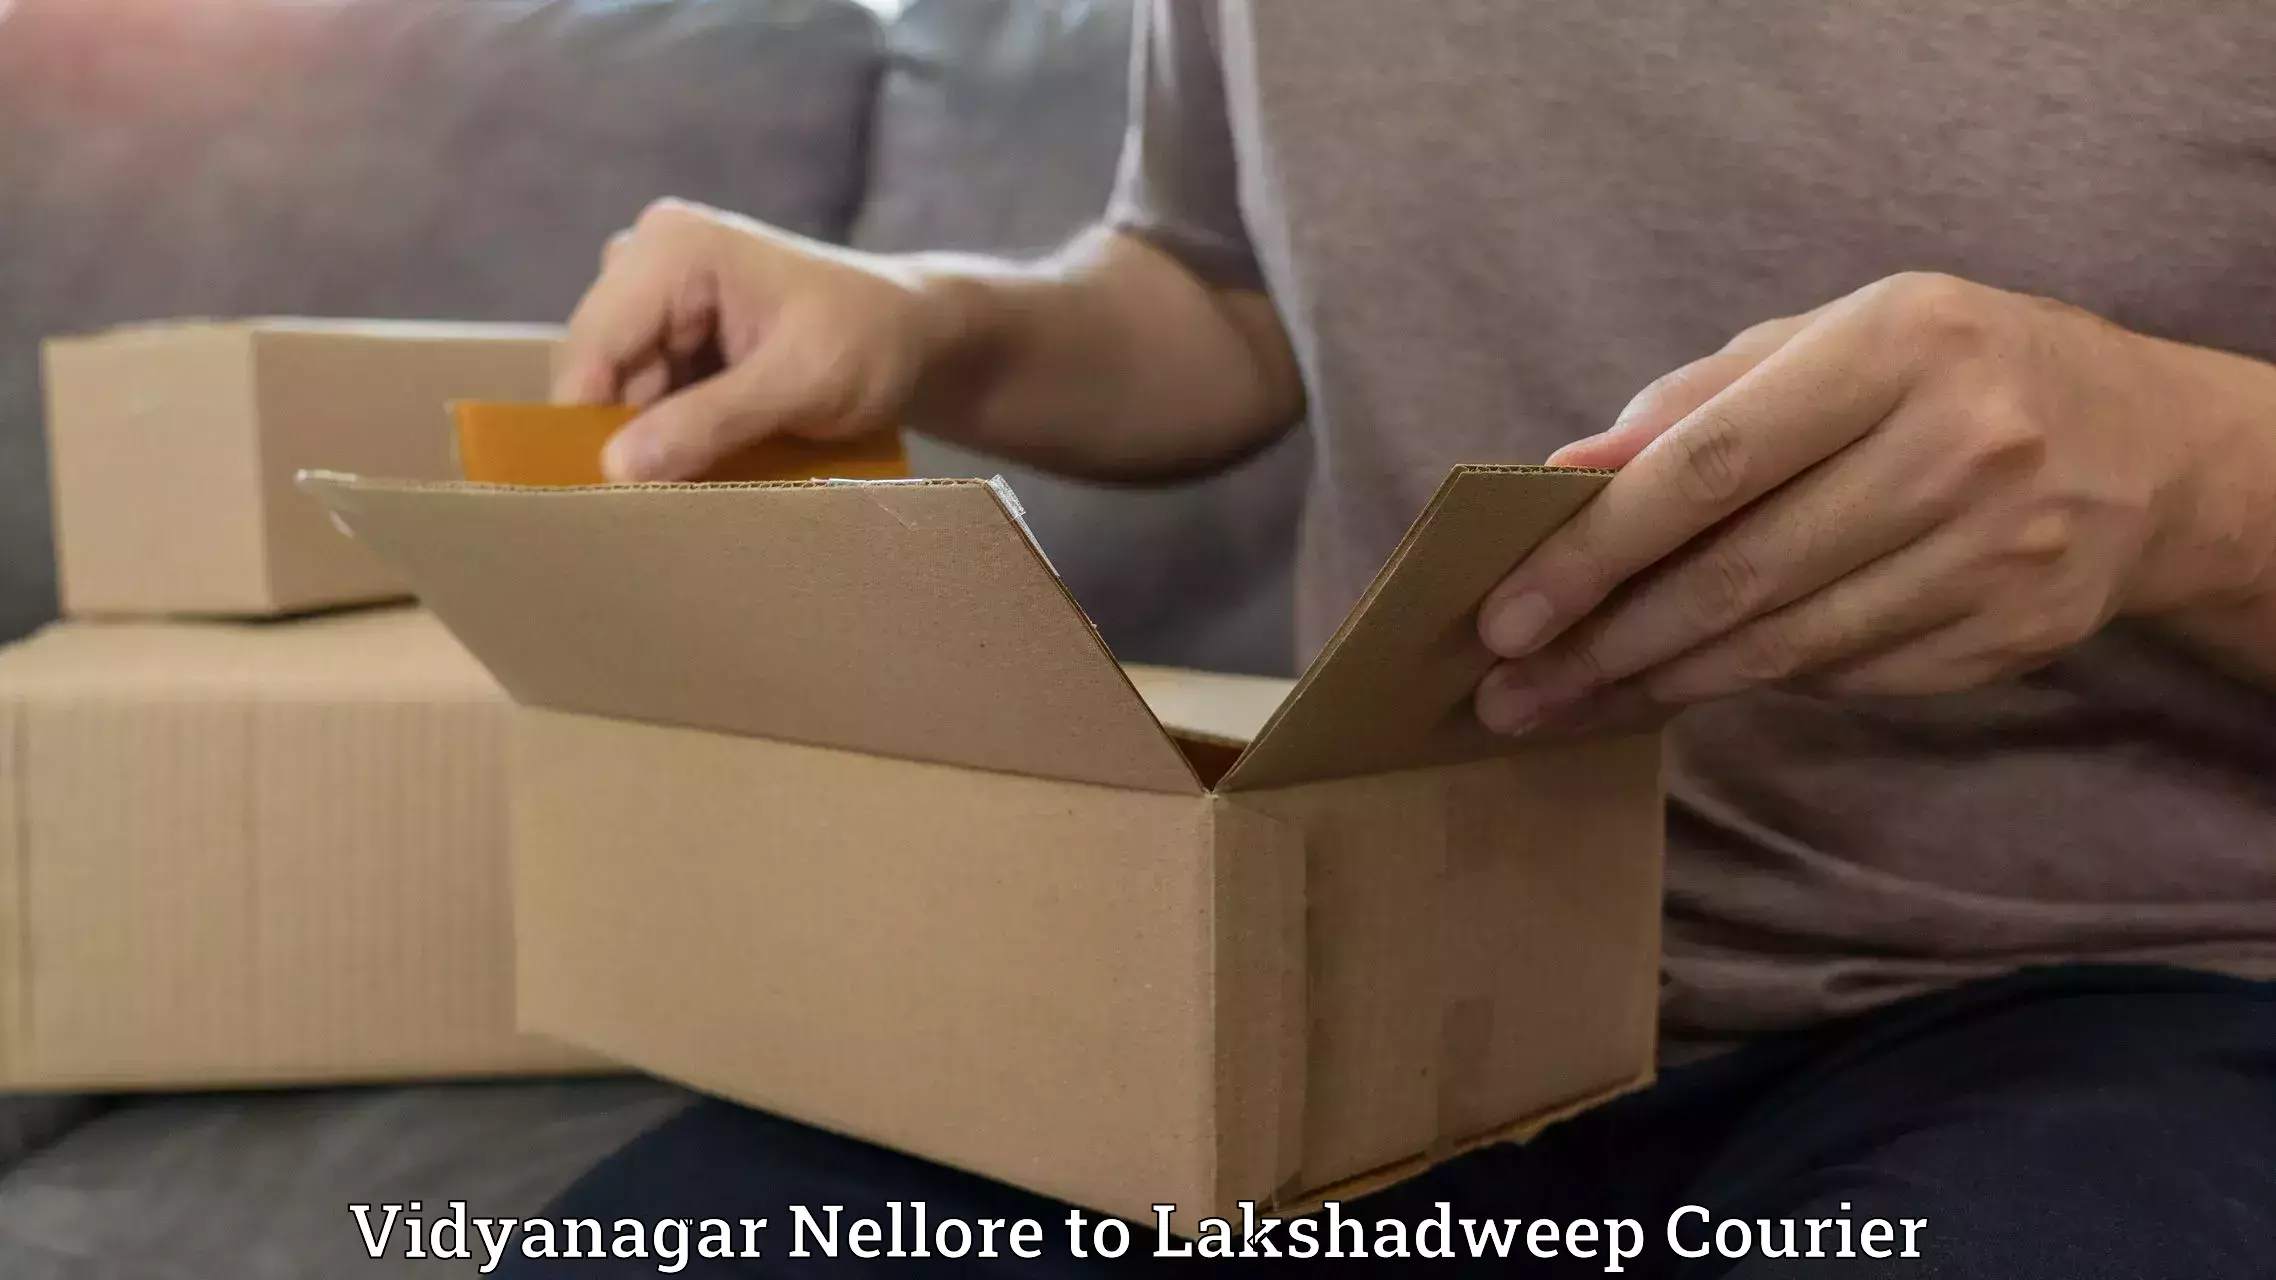 Efficient cargo handling Vidyanagar Nellore to Lakshadweep